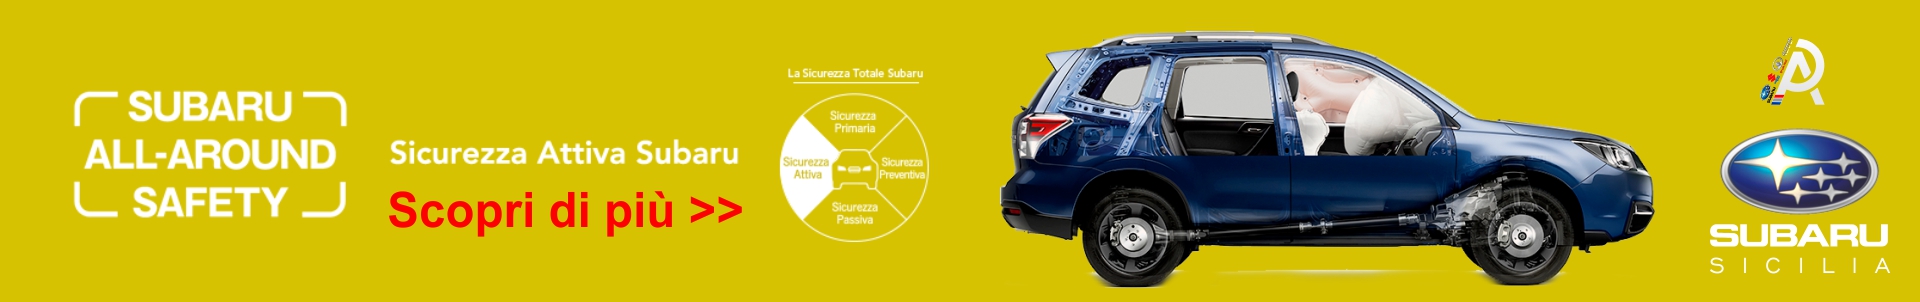 Sistemi di sicurezza Subaru